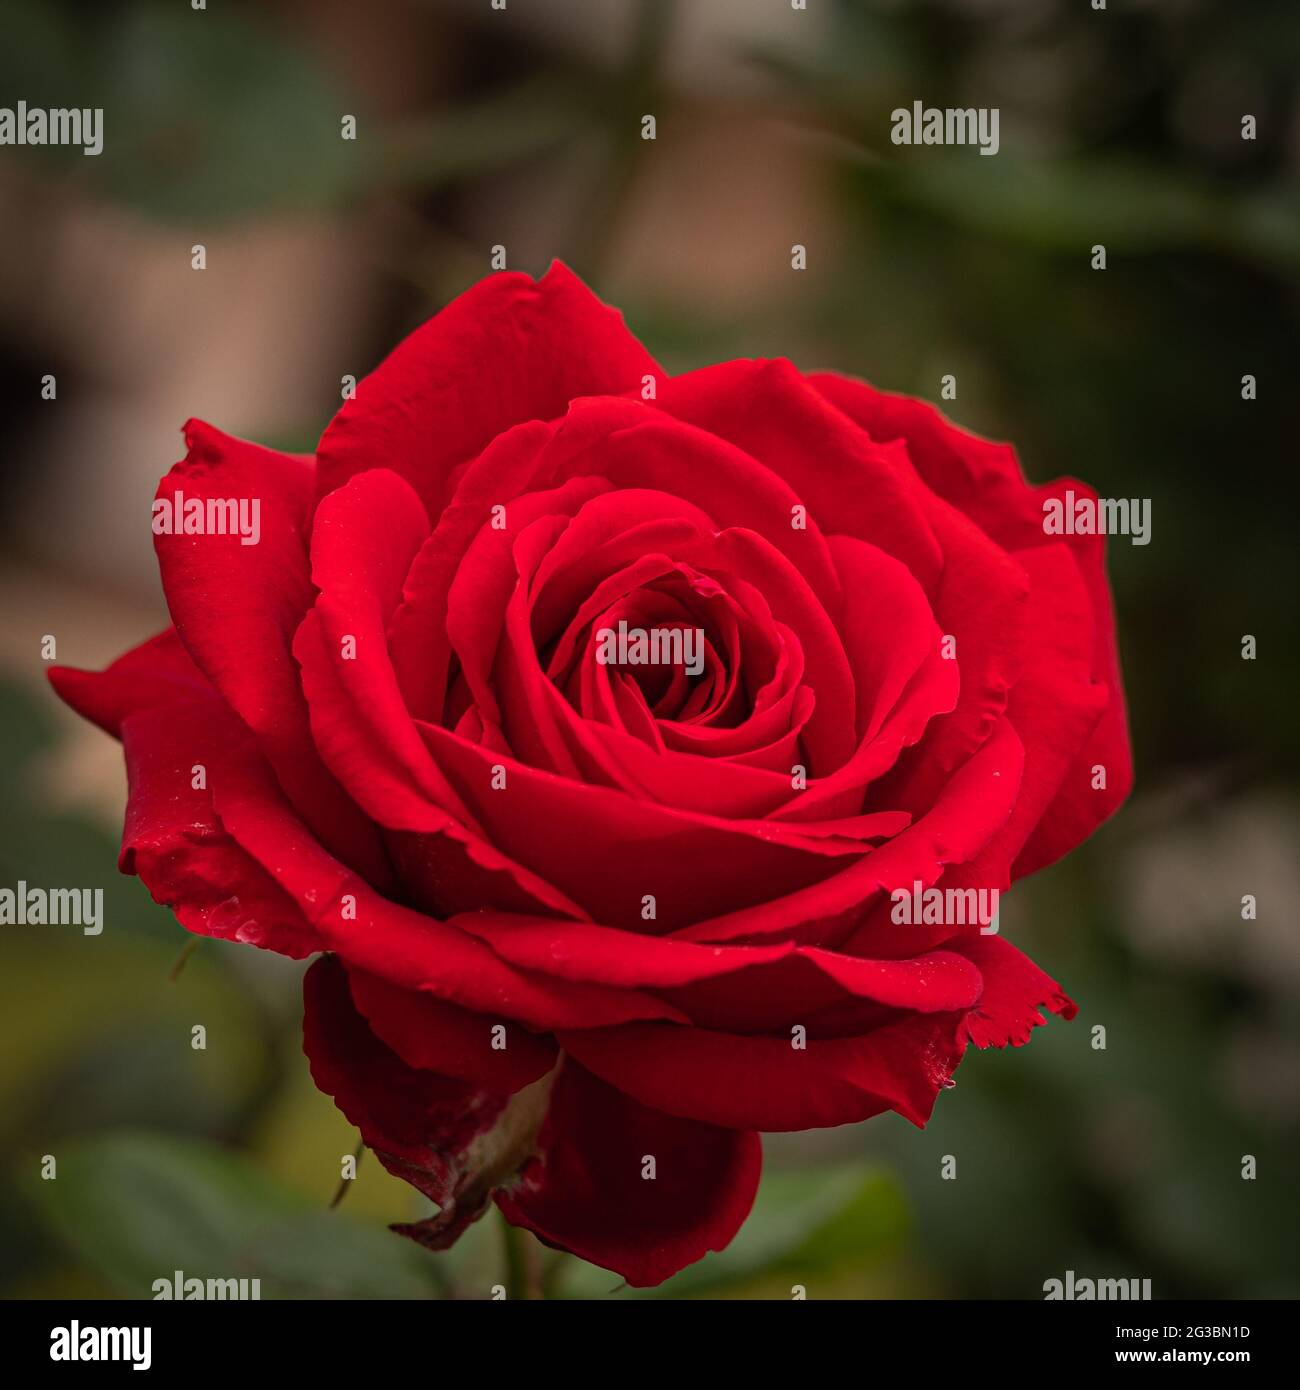 rosa rossa isolata su sfondo verde naturale Foto Stock